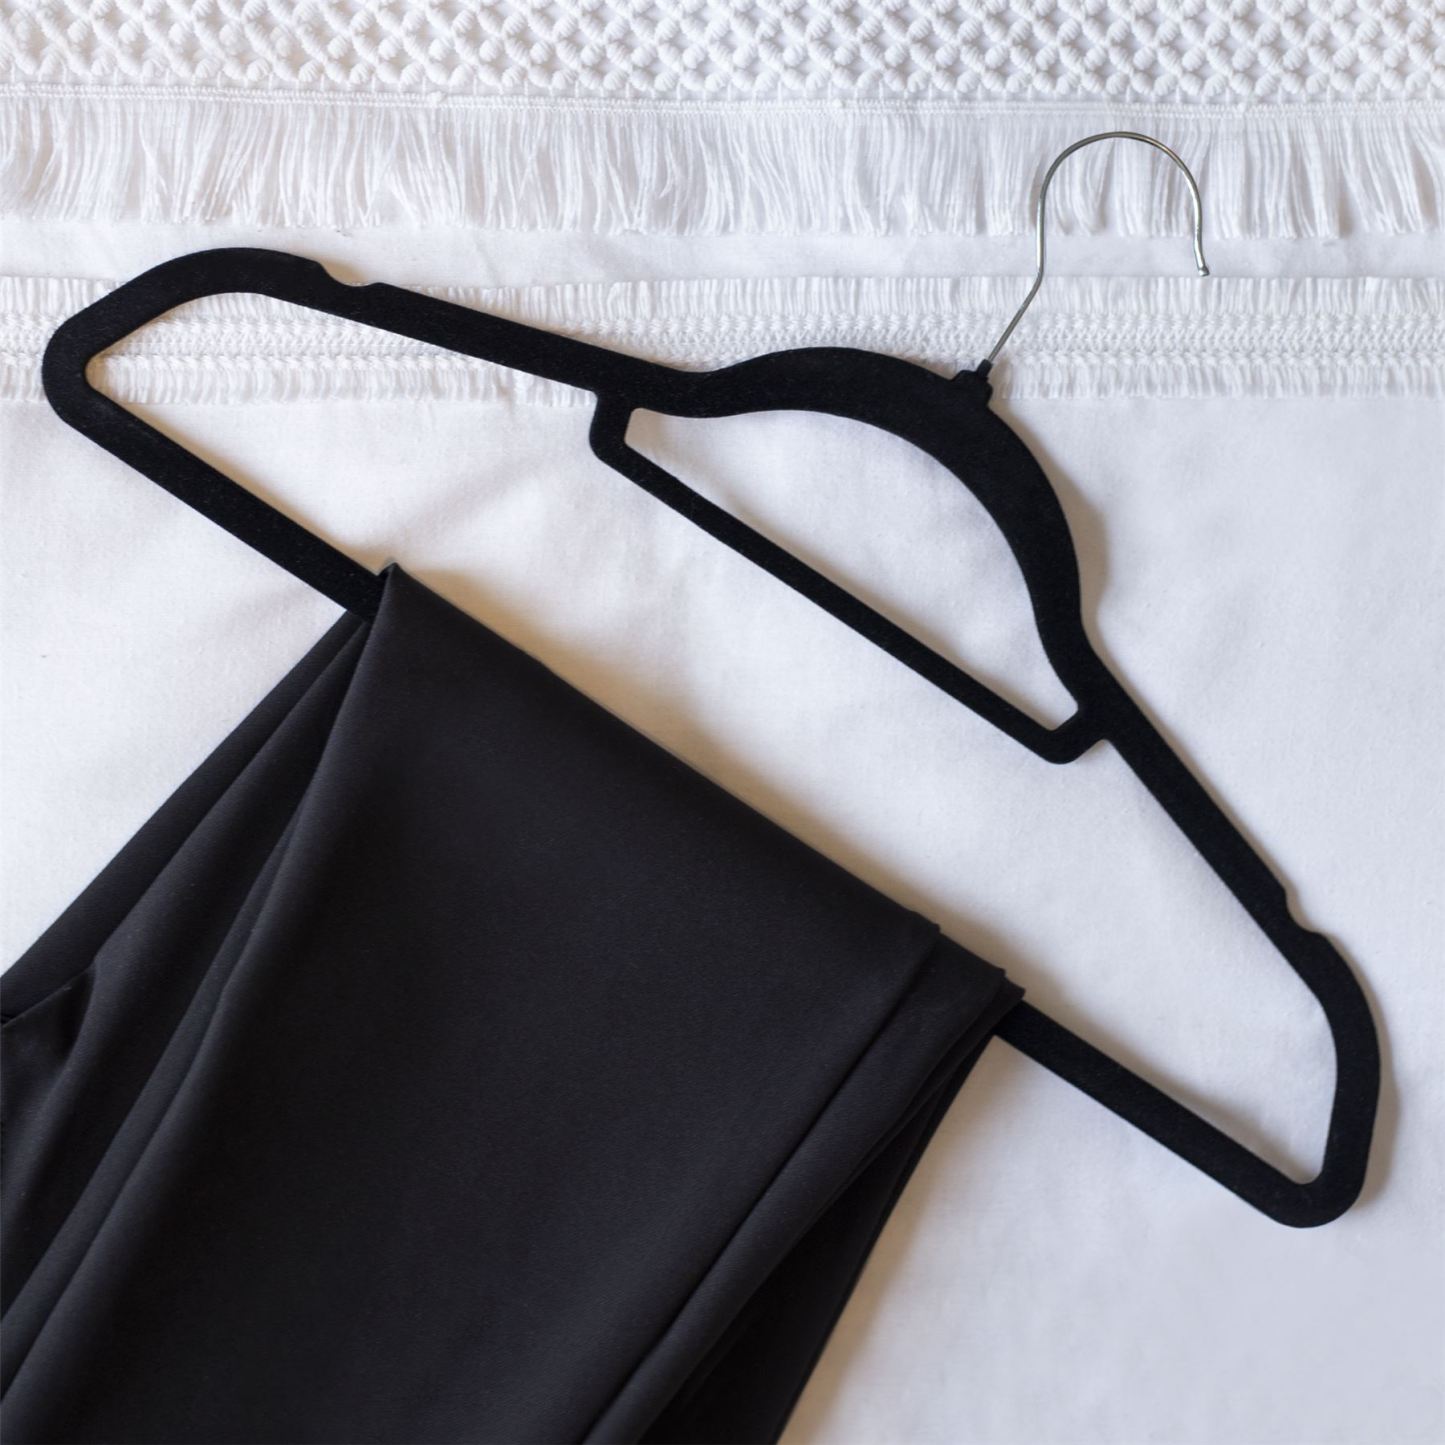 Velvet Coat Hangers Black - Pack of 50 | M&W